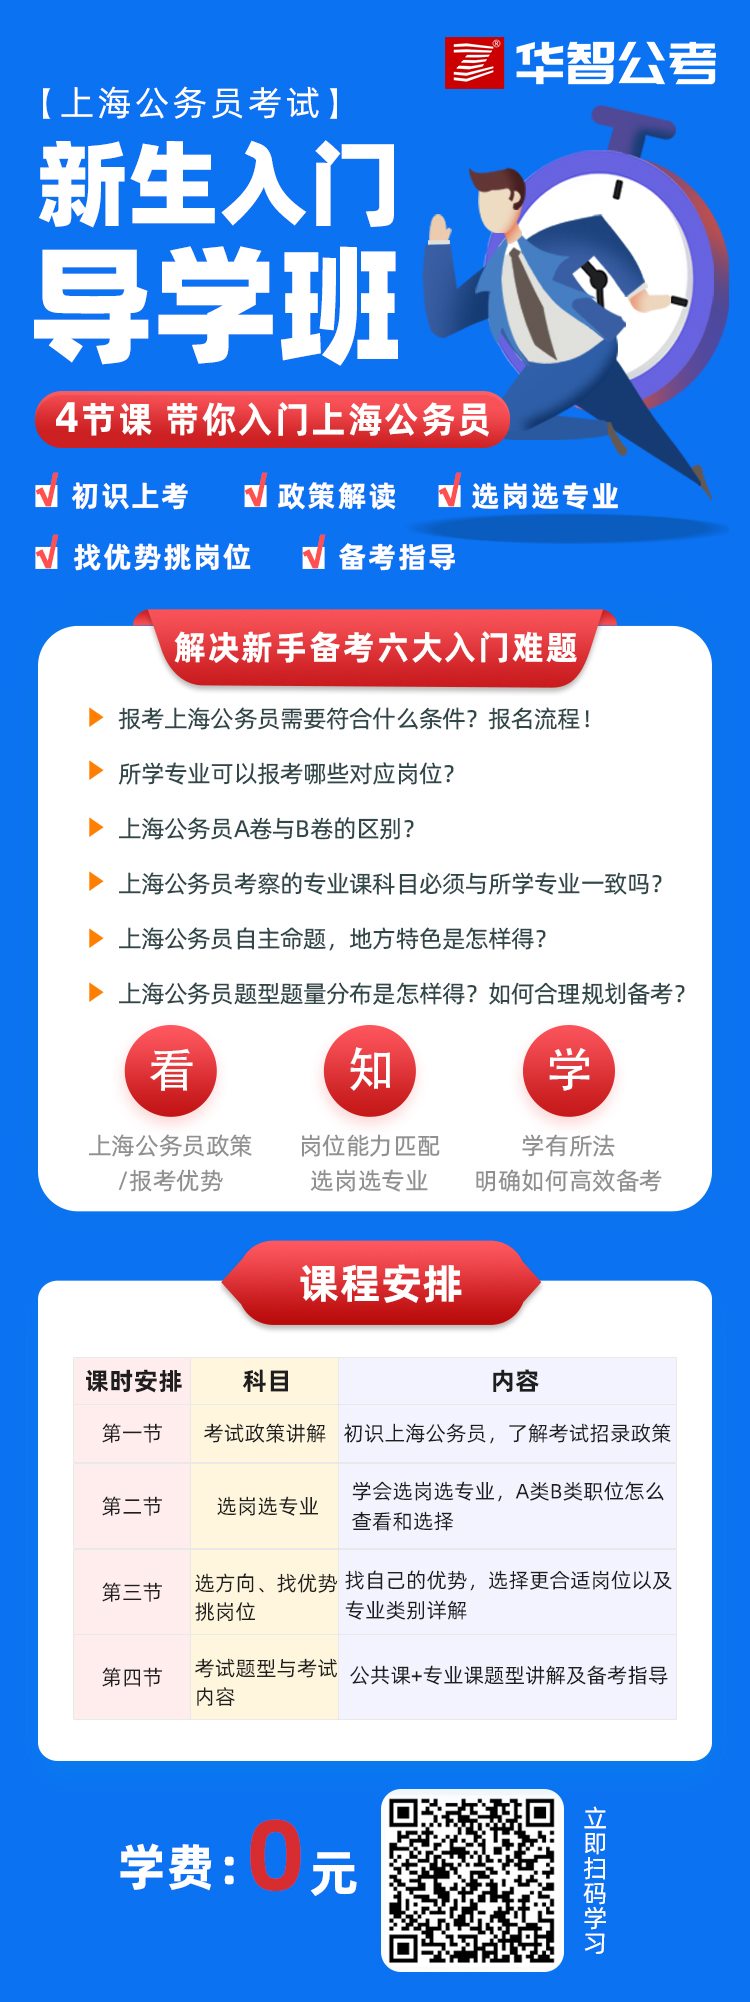 上海公务员考试「新生入门导学」